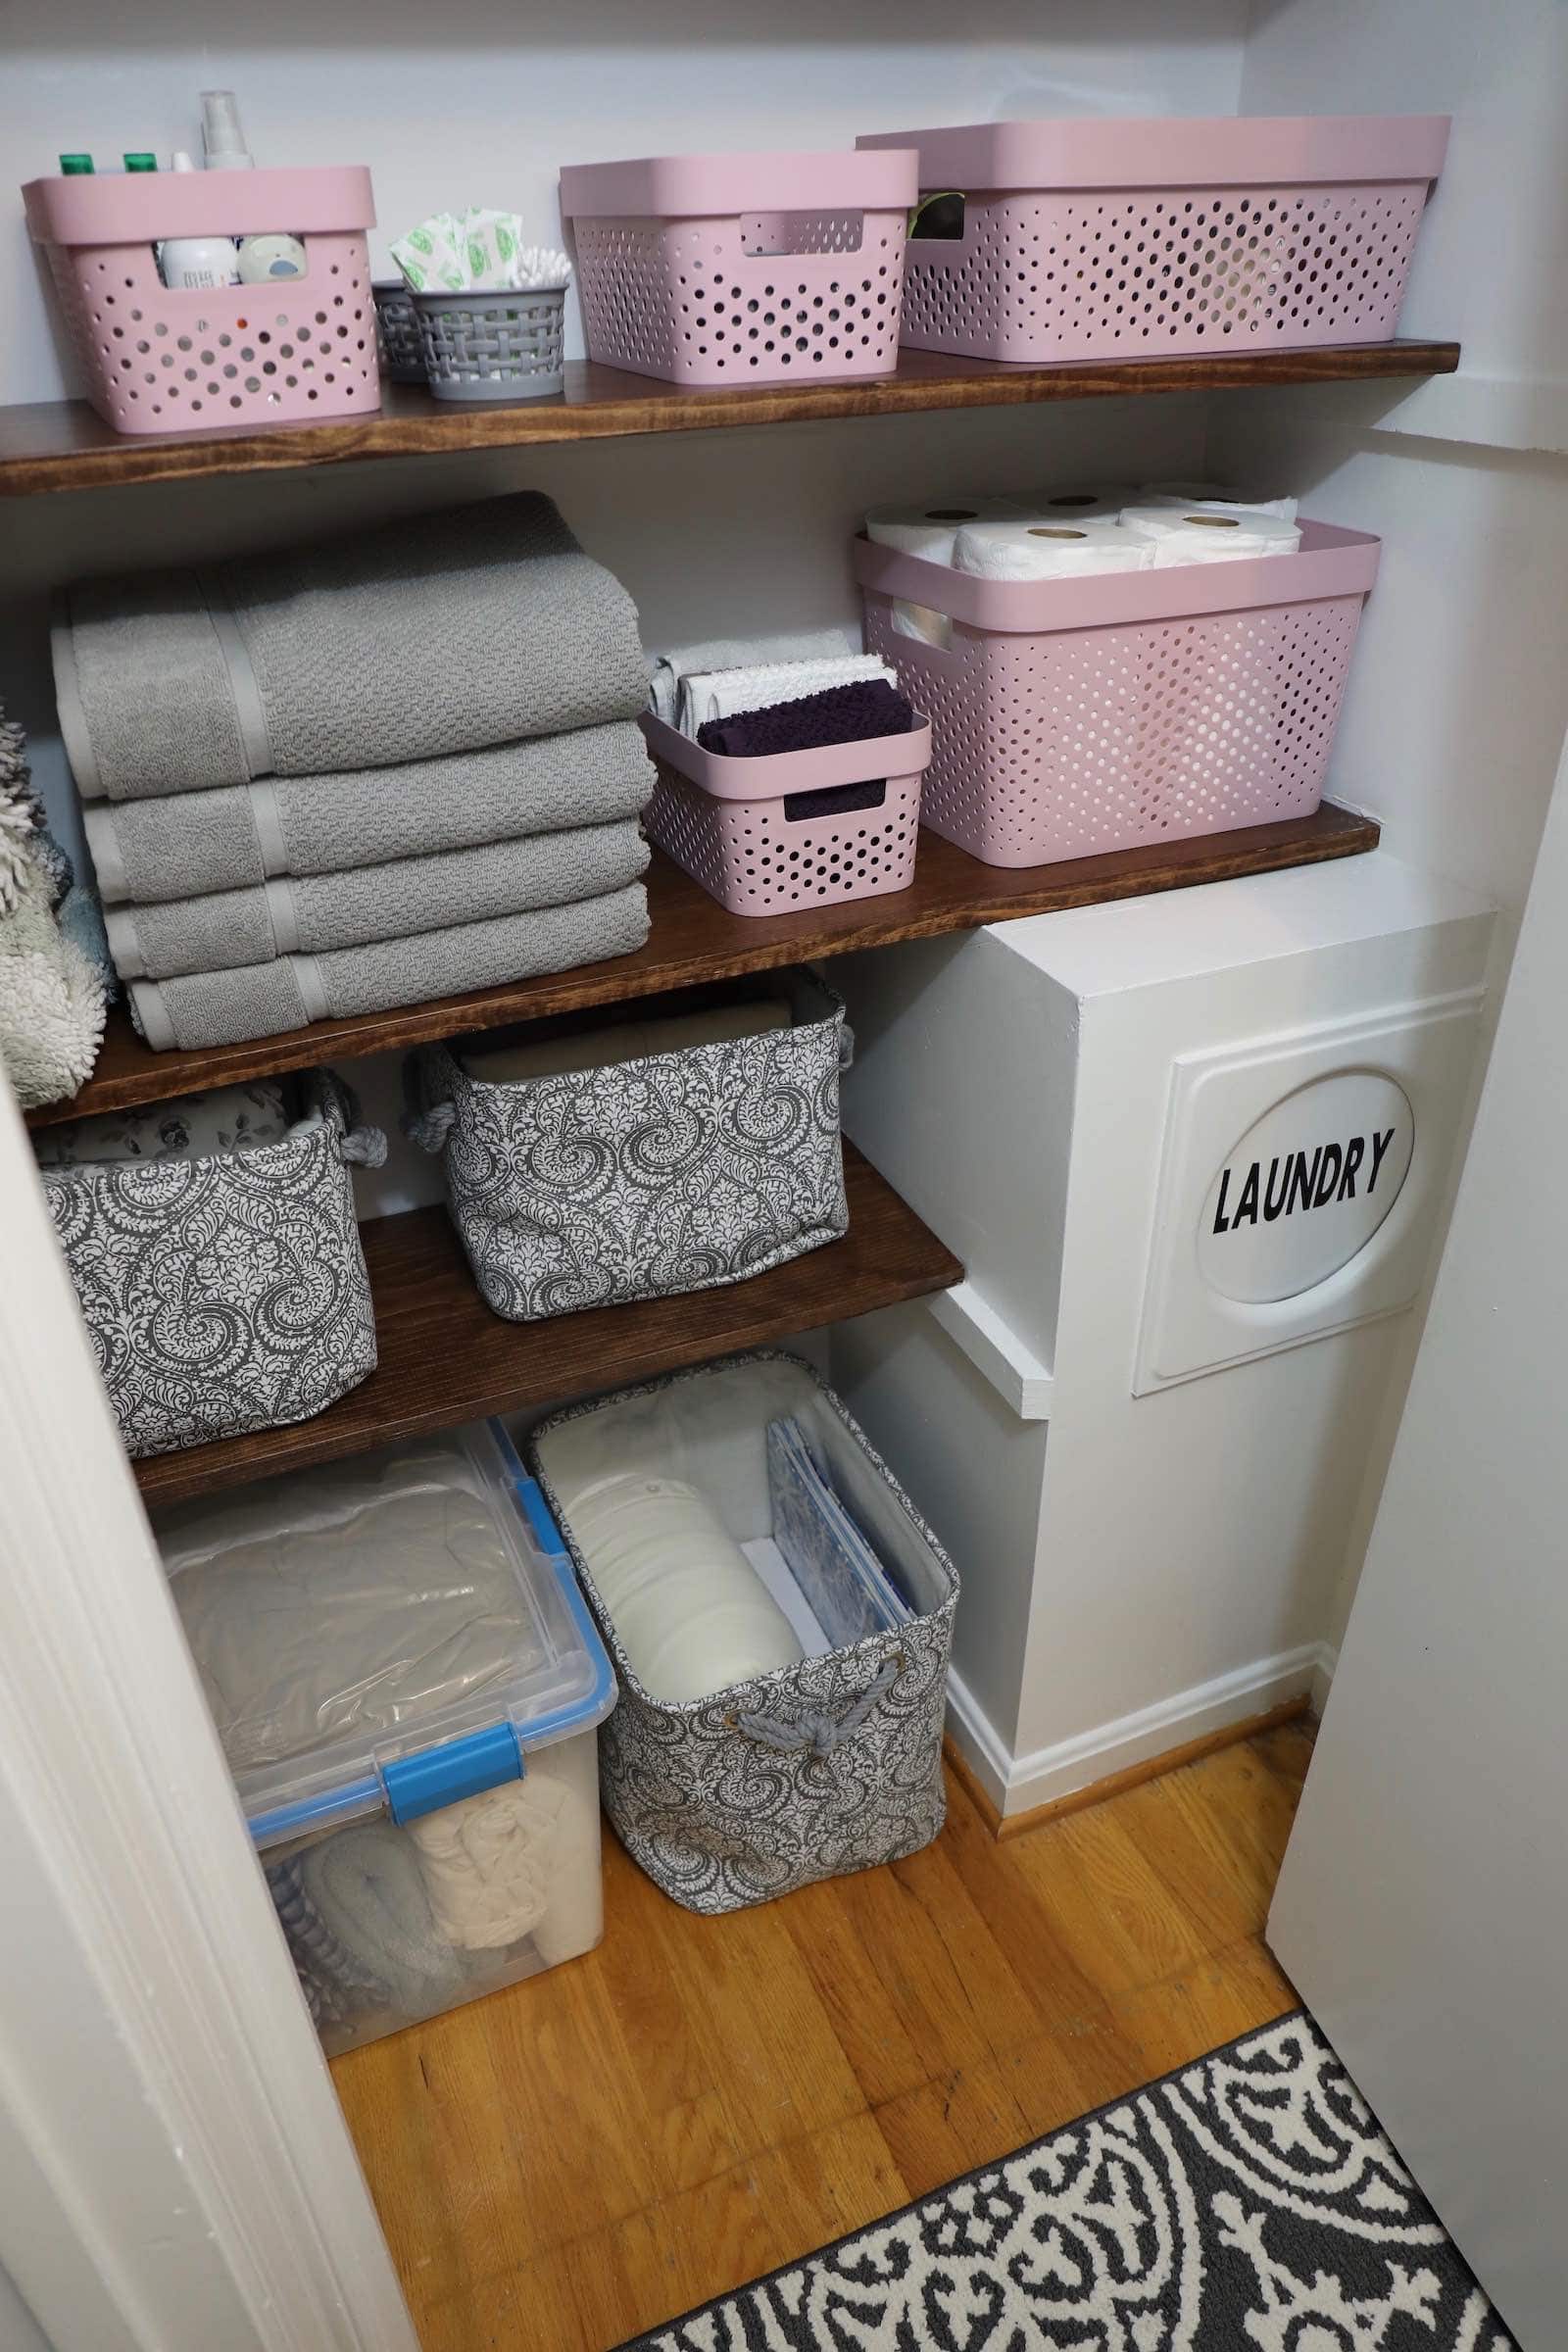 How to Build DIY Closet Shelves - Create a pretty linen closet or hallway closet by building DIY closet shelves with pine.